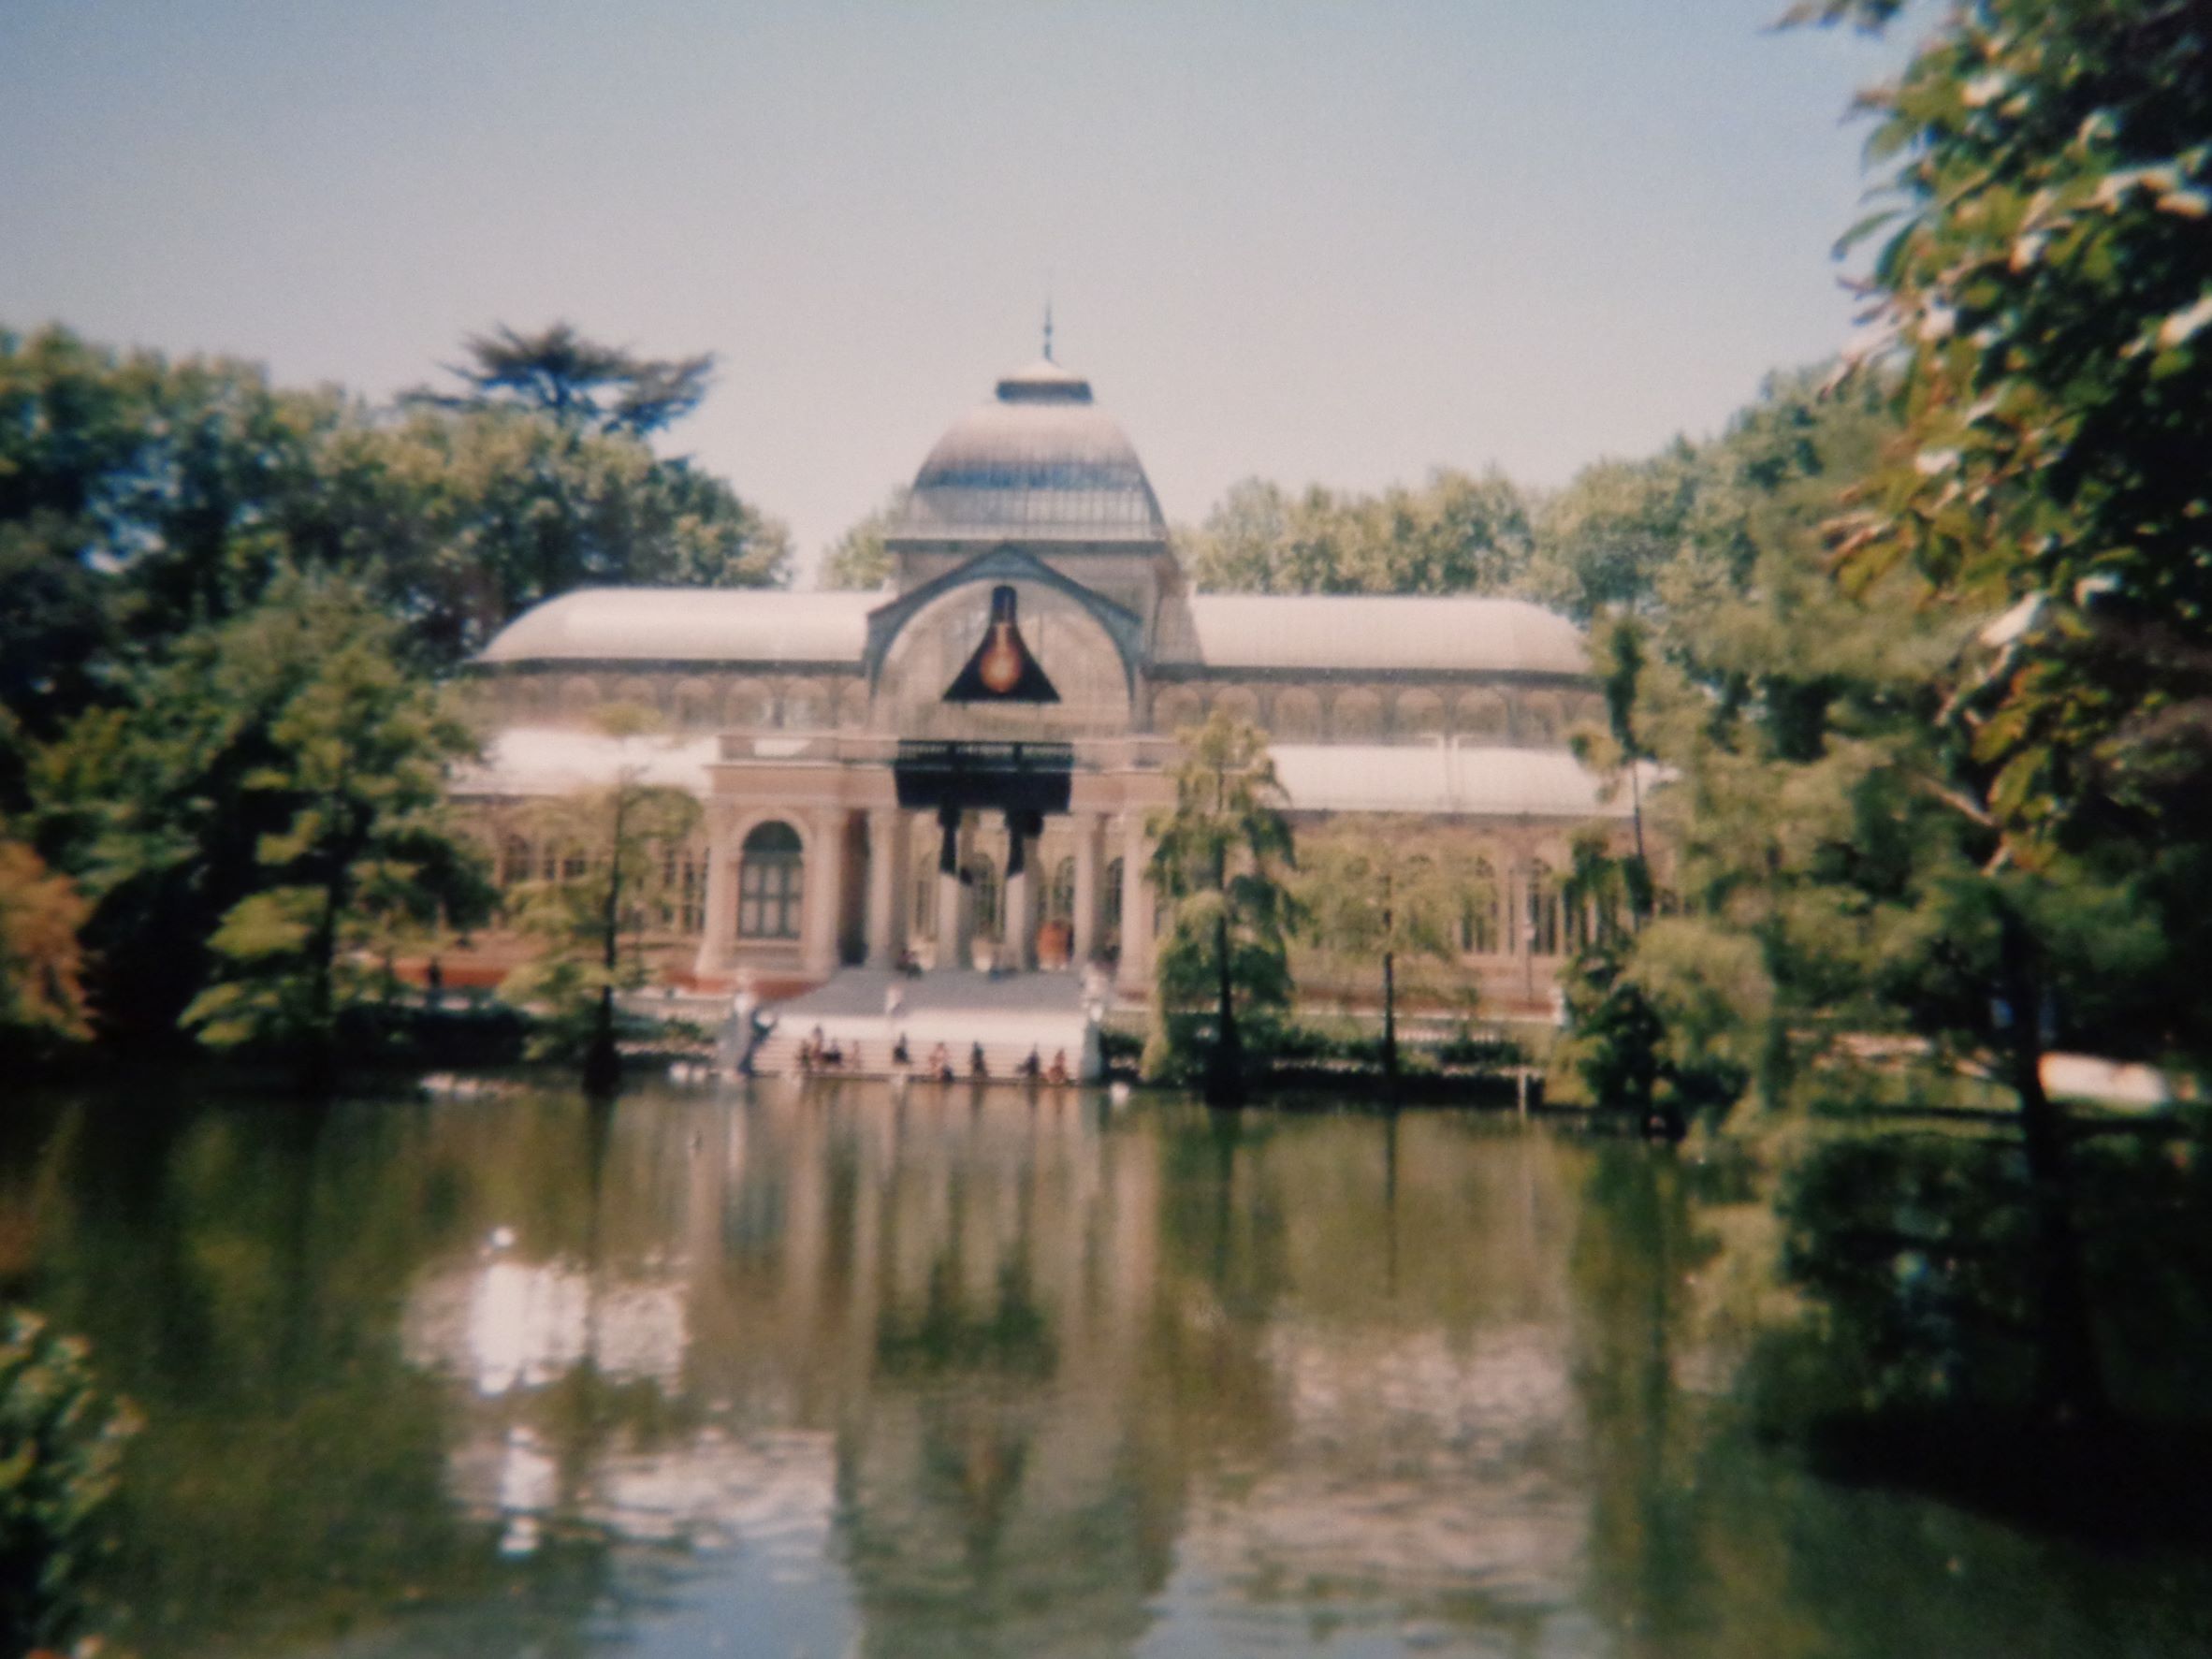 Madrid Retiro palacio de cristal over pond